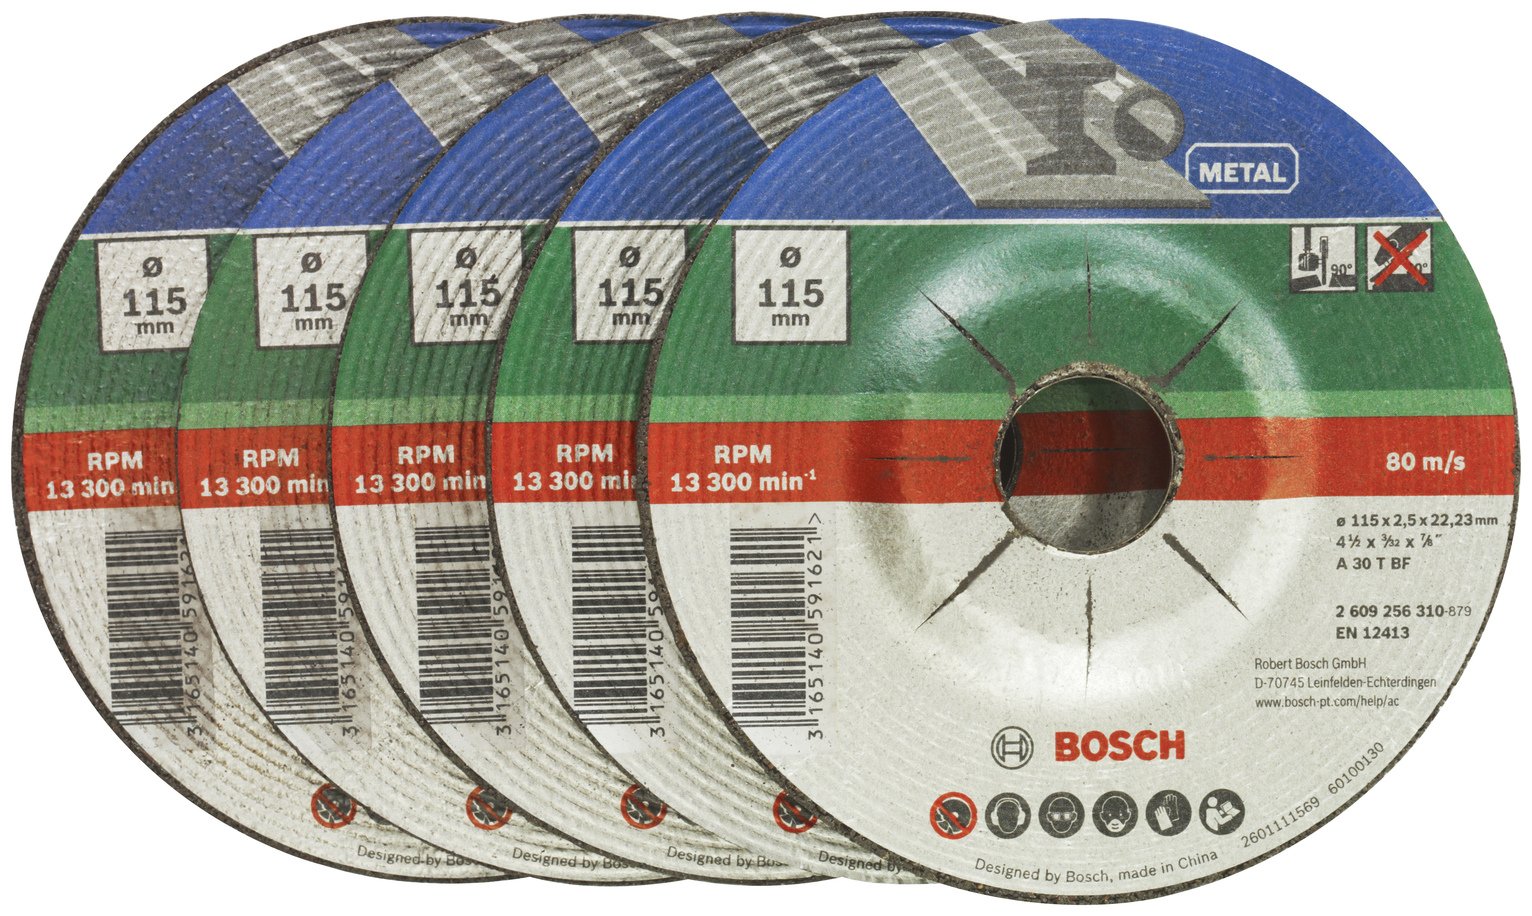 Bosch 5 Piece 115mm Metal Cutting Discs Review